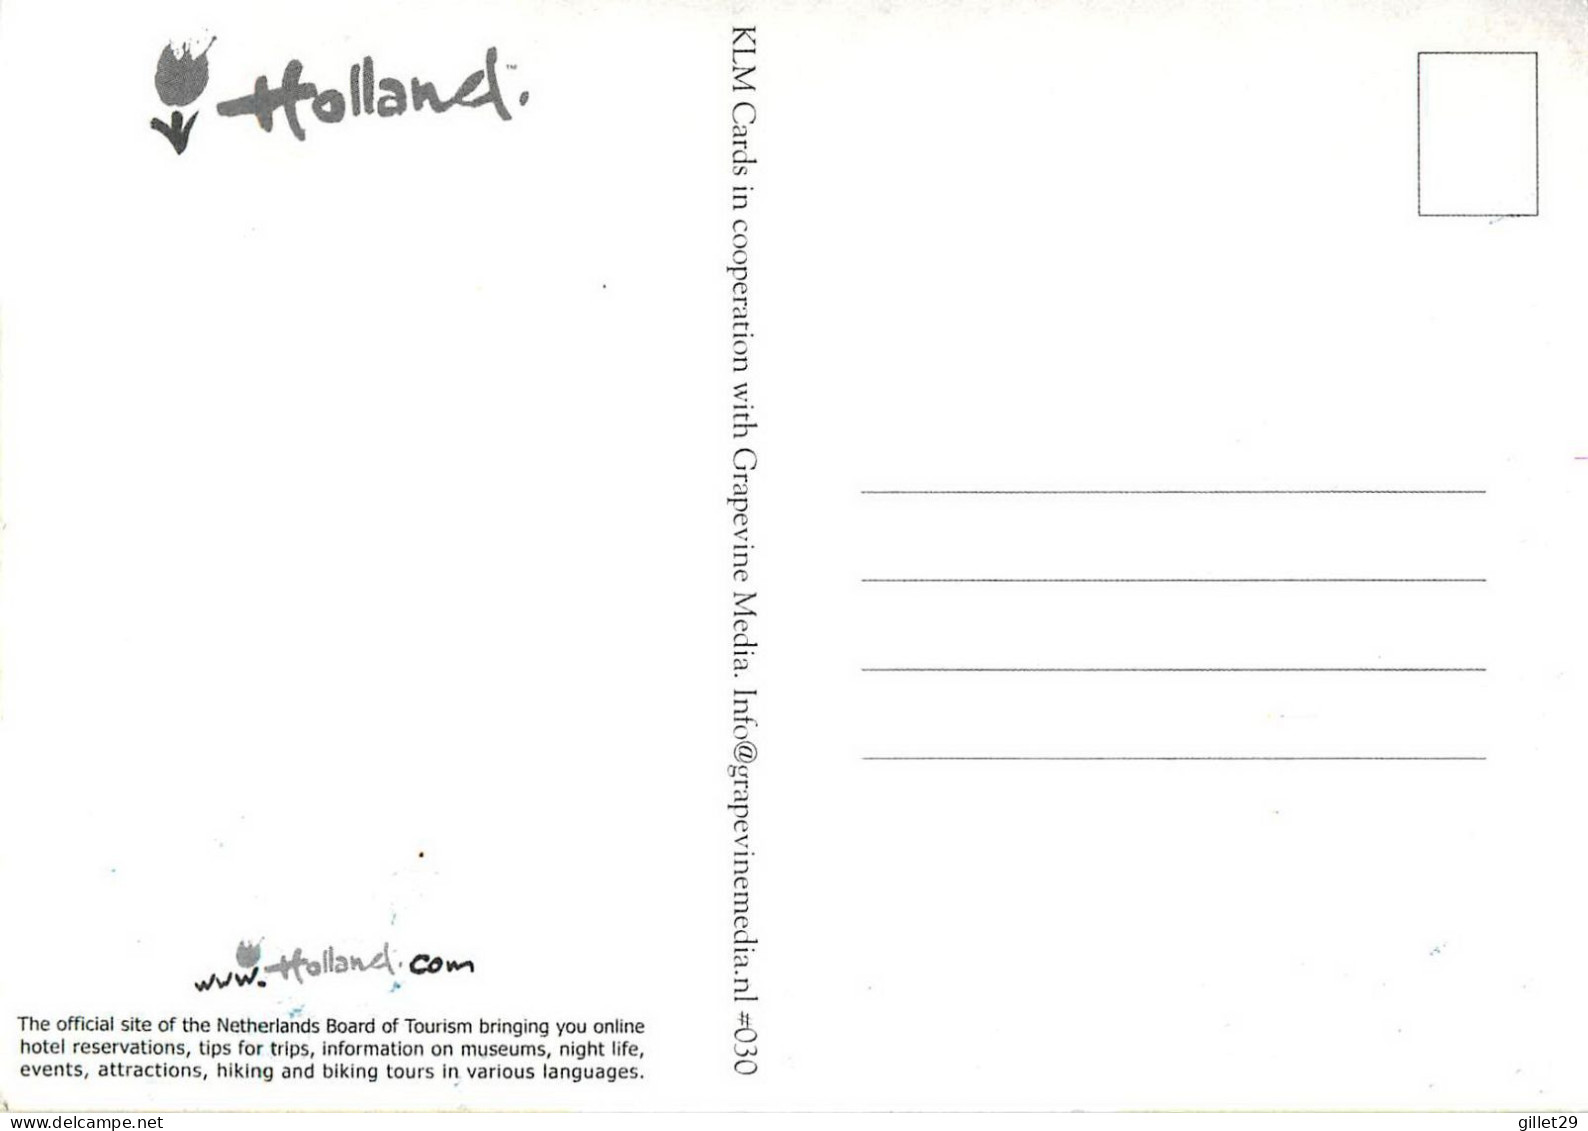 PUBLICITÉ - ADVERTISING - THE NETHERLANDS BOARD OF TOURISM - HOLLAND.COM - KLM CARDS - - Publicité